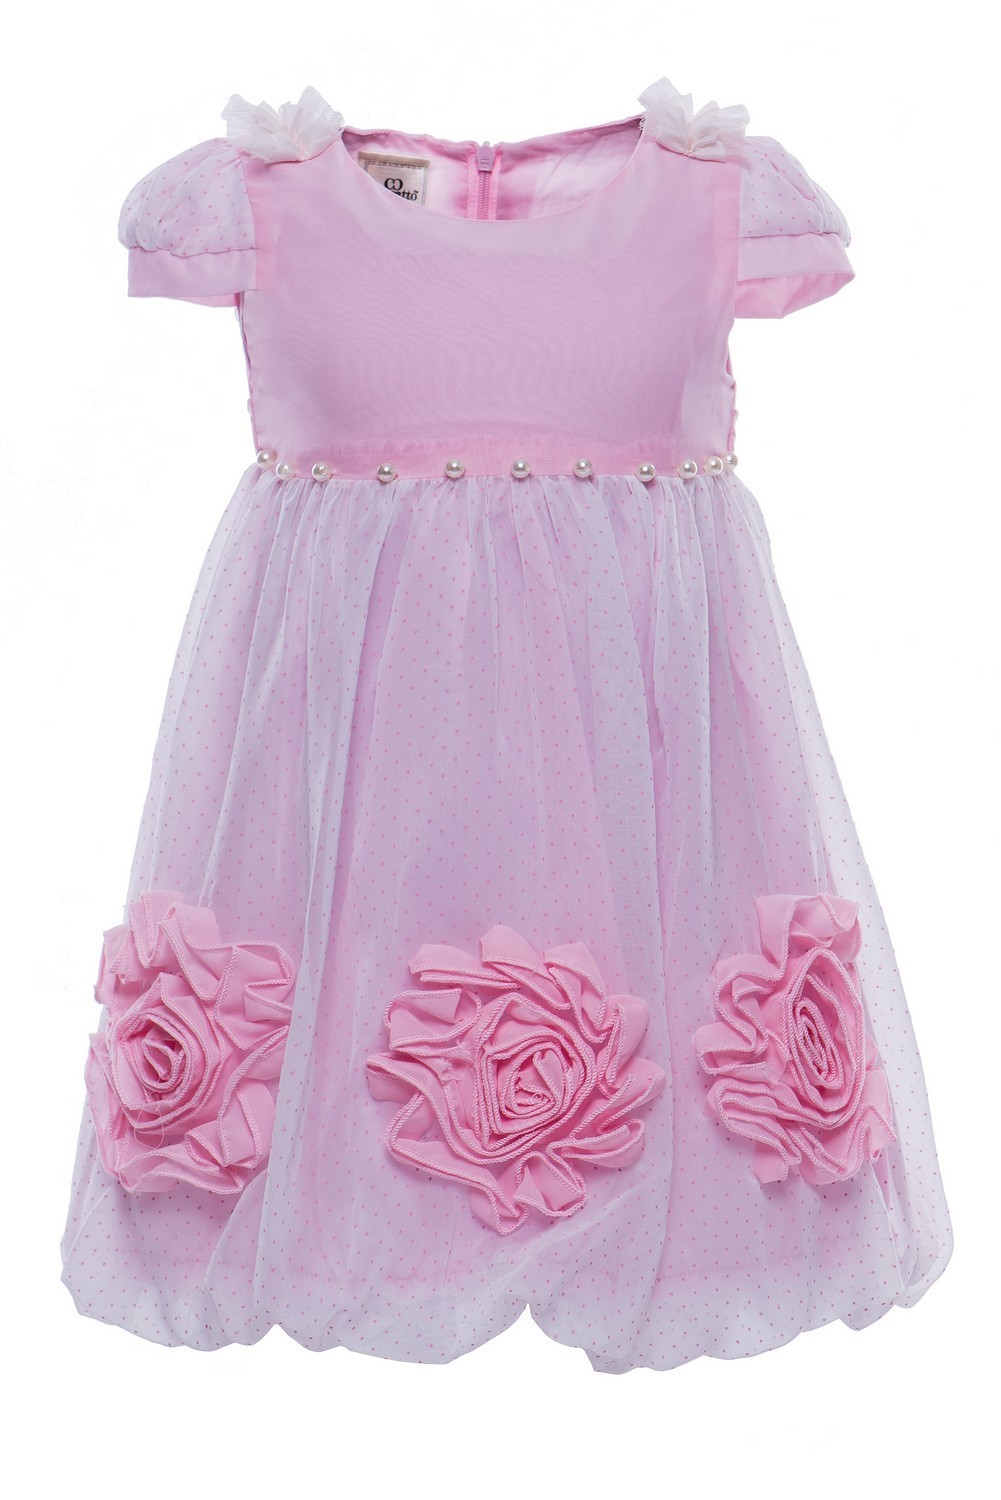 Купить Платье для девочки PL87 темно-розовый